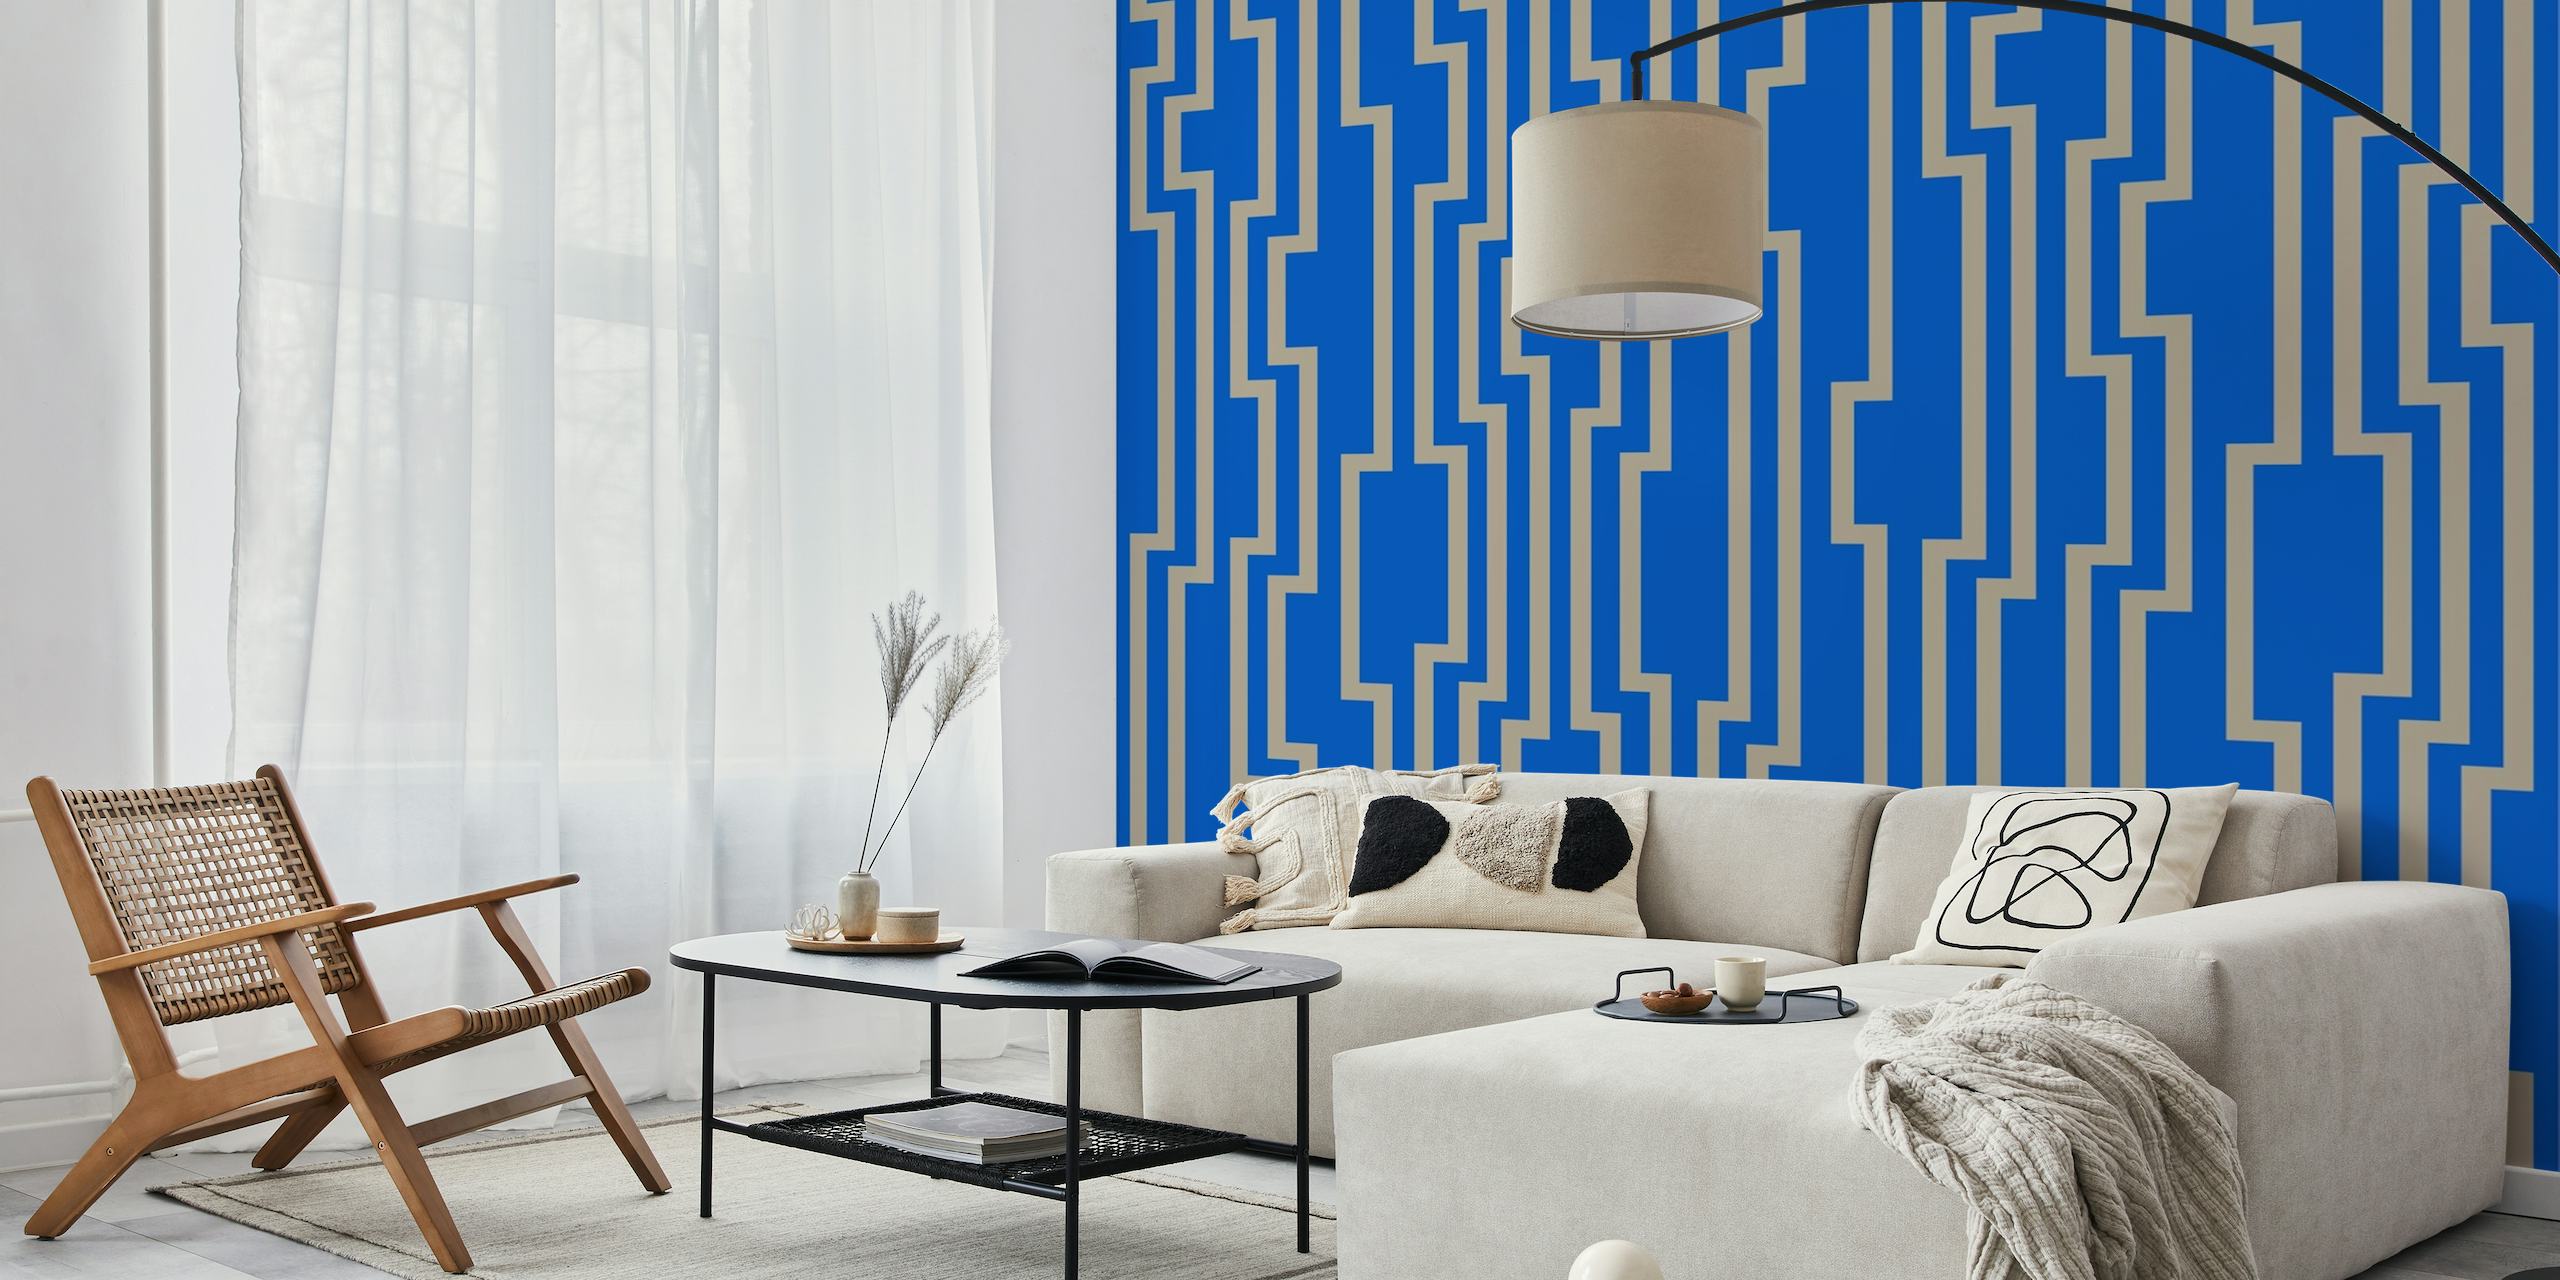 Fotomural vinílico de parede com listras geométricas em zigue-zague nas cores bege e azul.